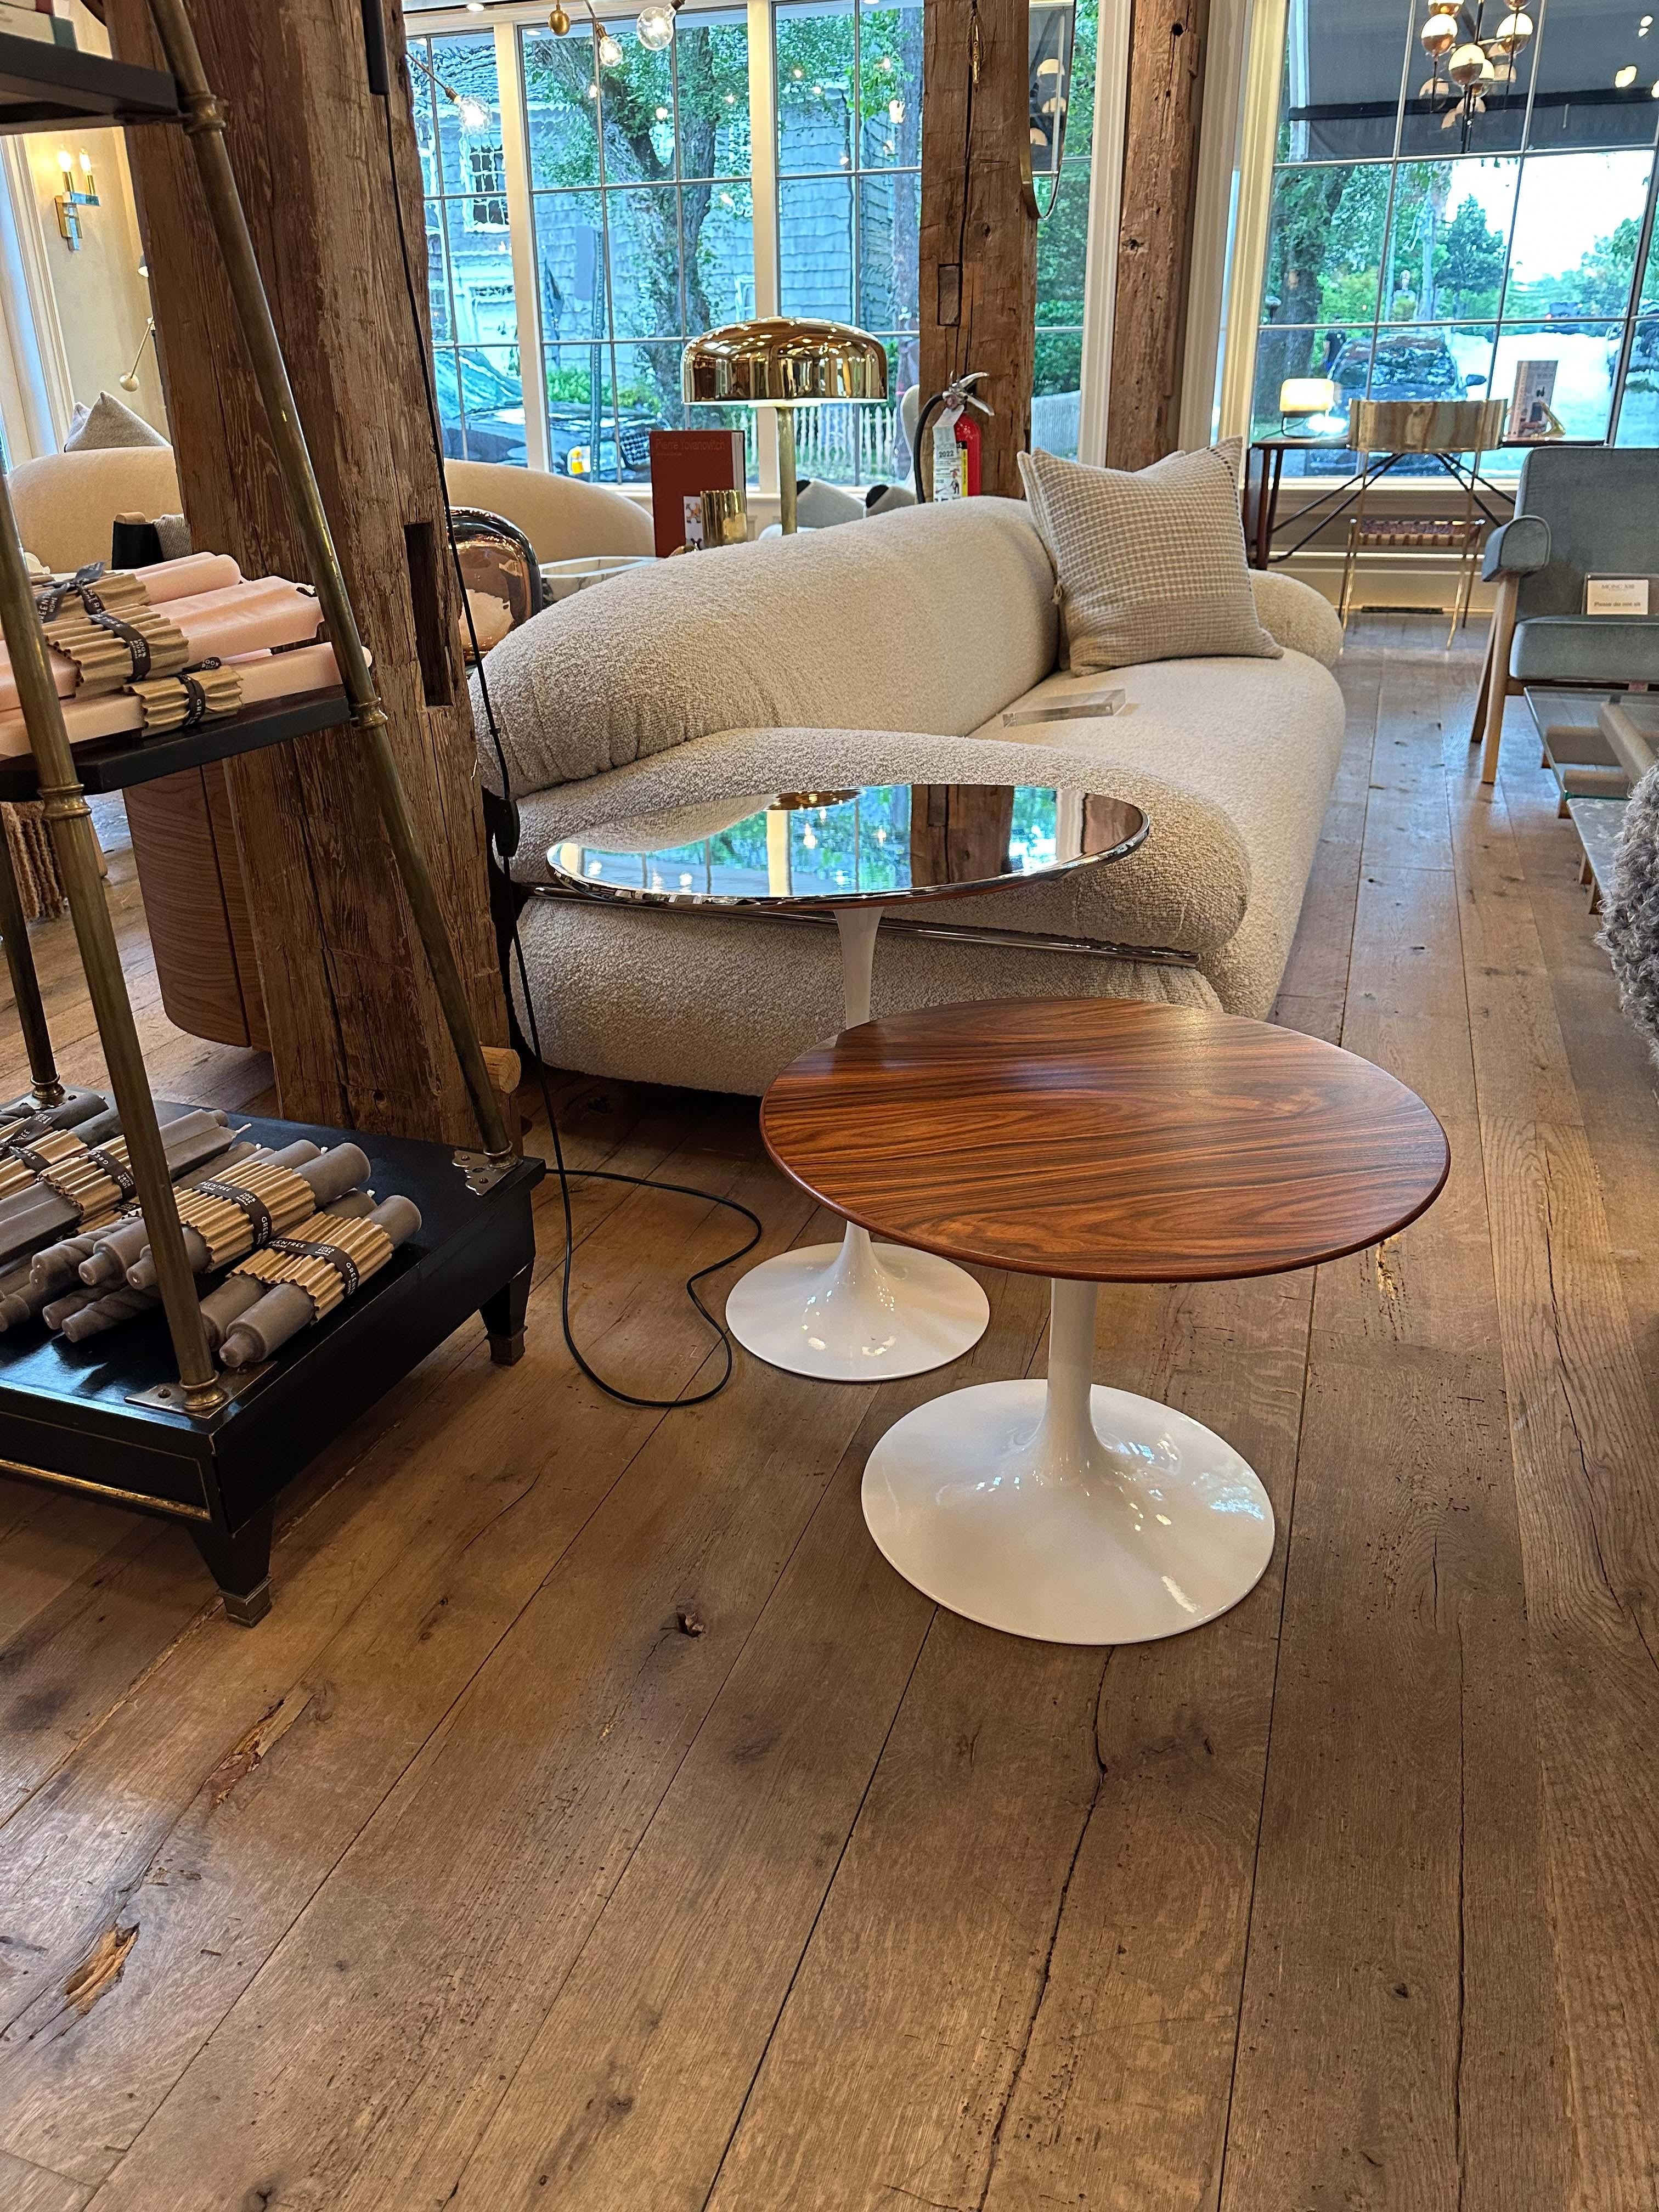 Erleben Sie zeitloses Design mit dem Eero Saarinen Oval Side Table von Knoll. Mit seiner nahtlosen, organischen Form und dem Sockel aus Palisanderholz und Weiß unterstreicht dieser ikonische Beistelltisch den Stil und die Attraktivität jedes Raumes.